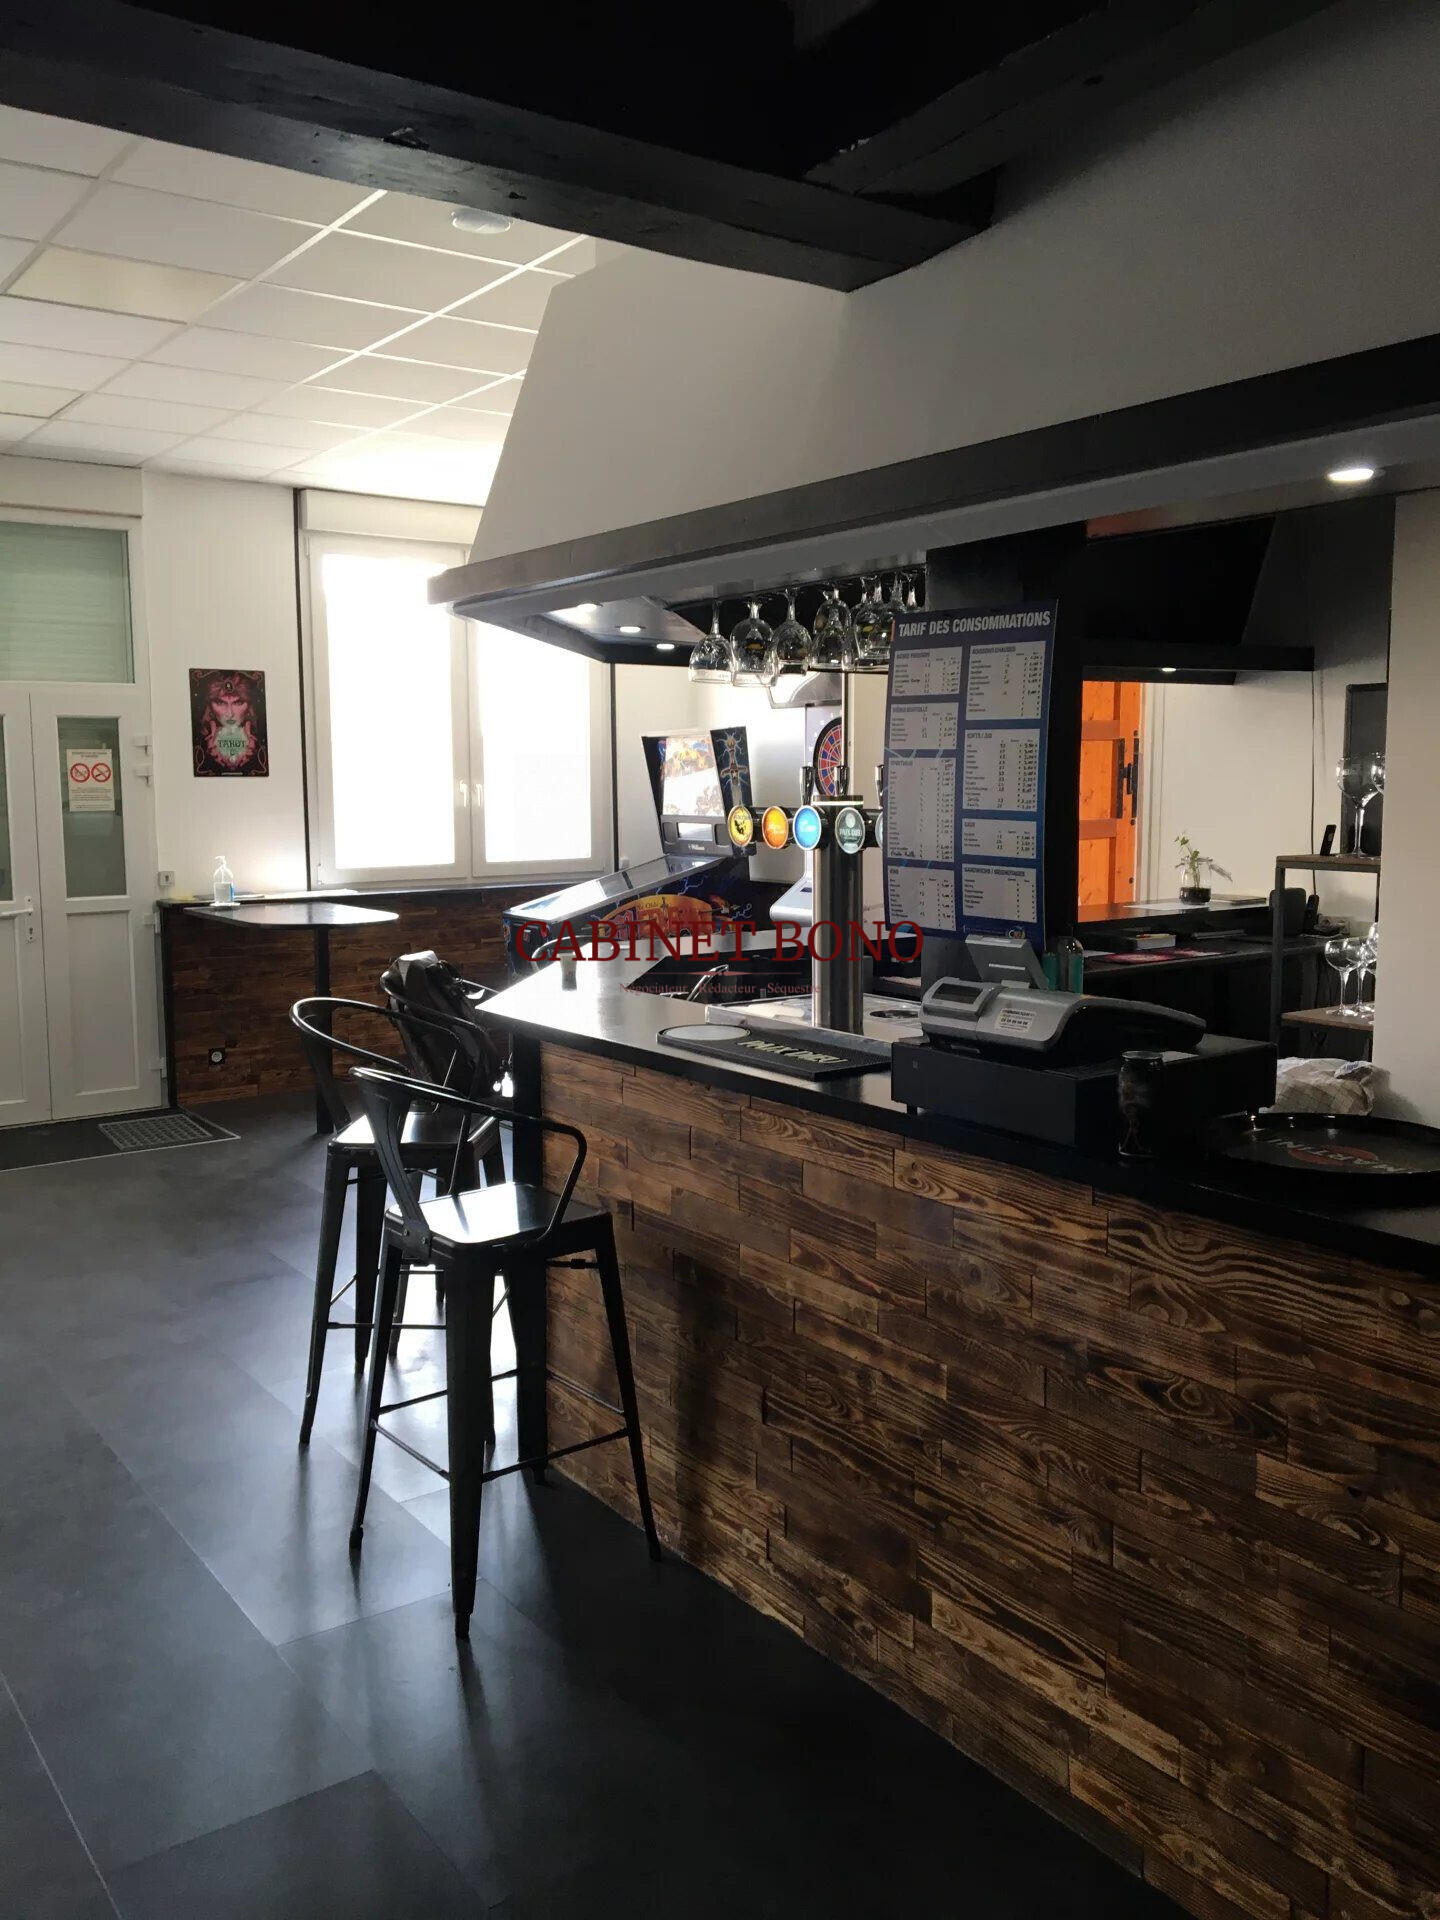 Vente bar restaurant rénové à Nogent l'Abbesse